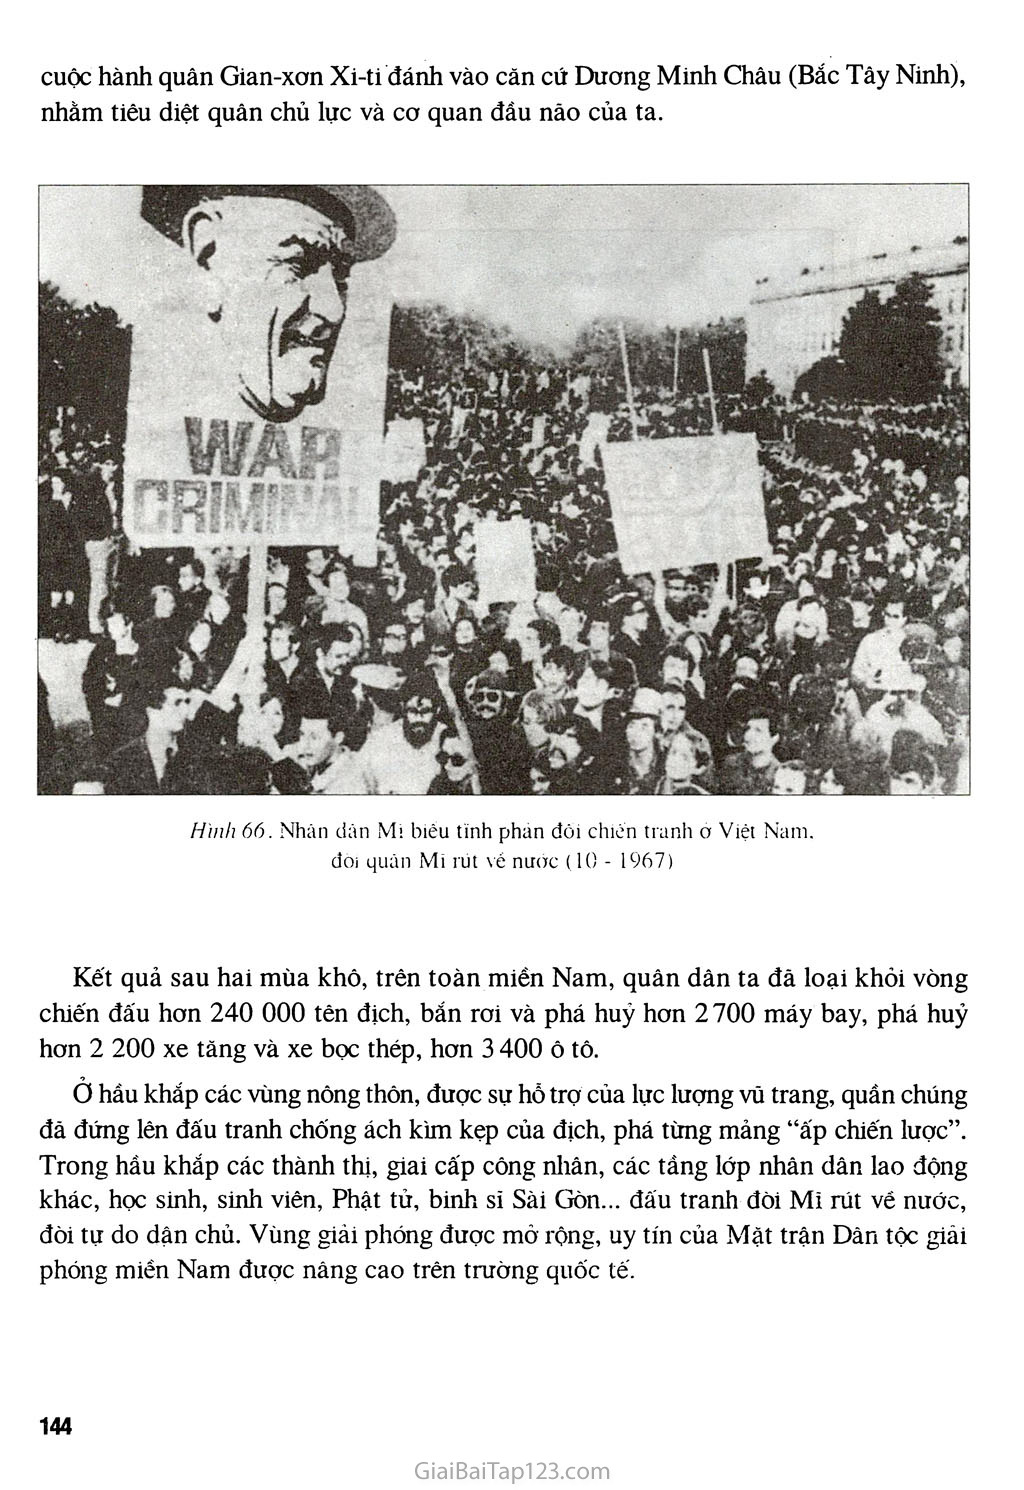 Bài 29 - Cả nước trực tiếp chiến đấu chống Mĩ, cứu nước (1965 - 1973) trang 3